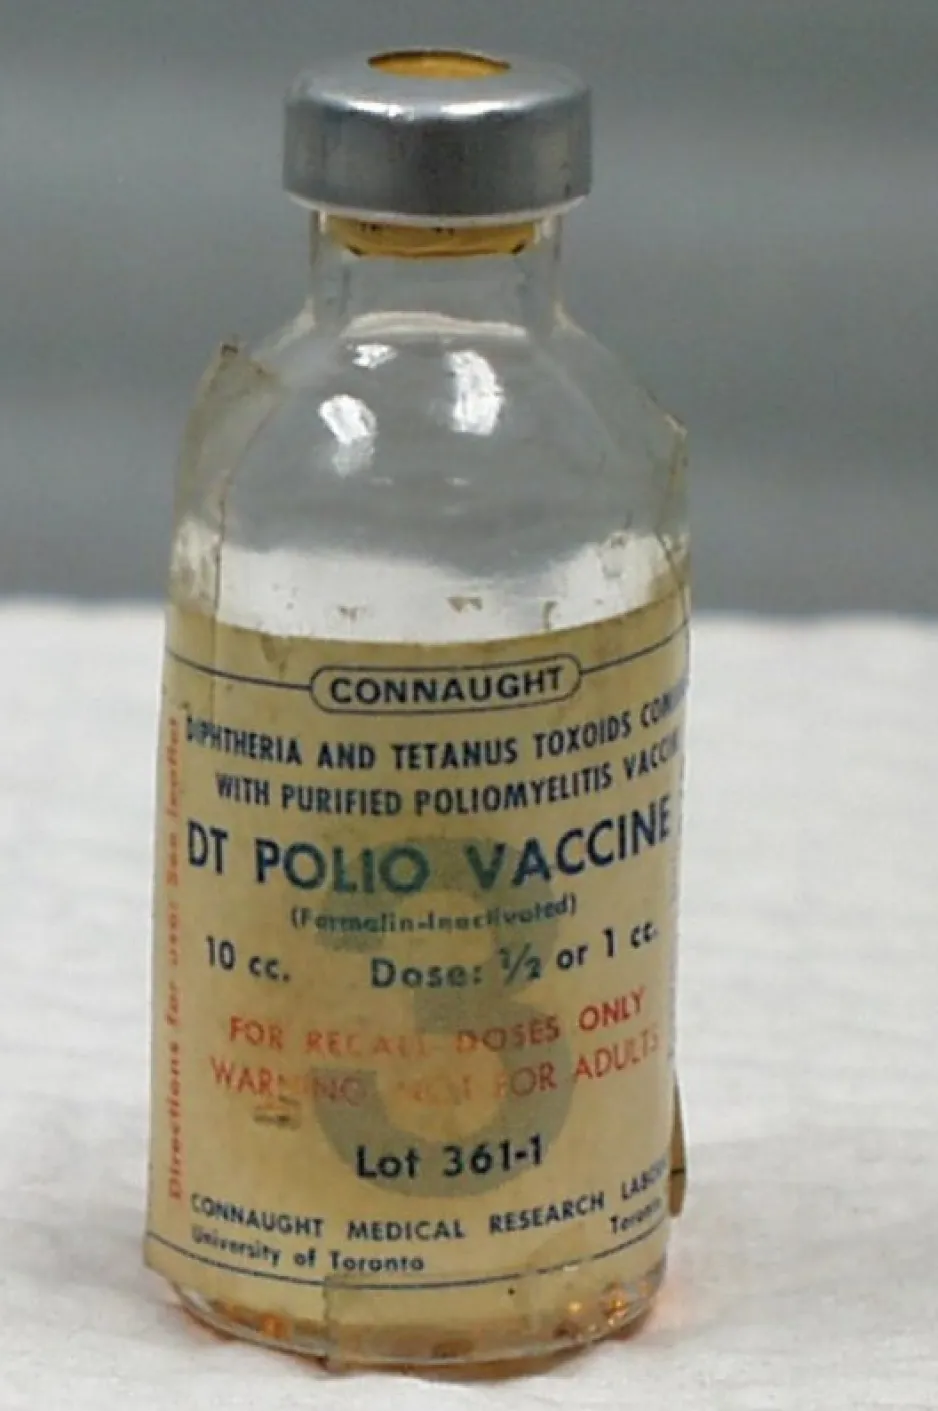 Une petite fiole de verre vide avec une étiquette décolorée sur laquelle on peut lire « DT Polio Vaccine ».